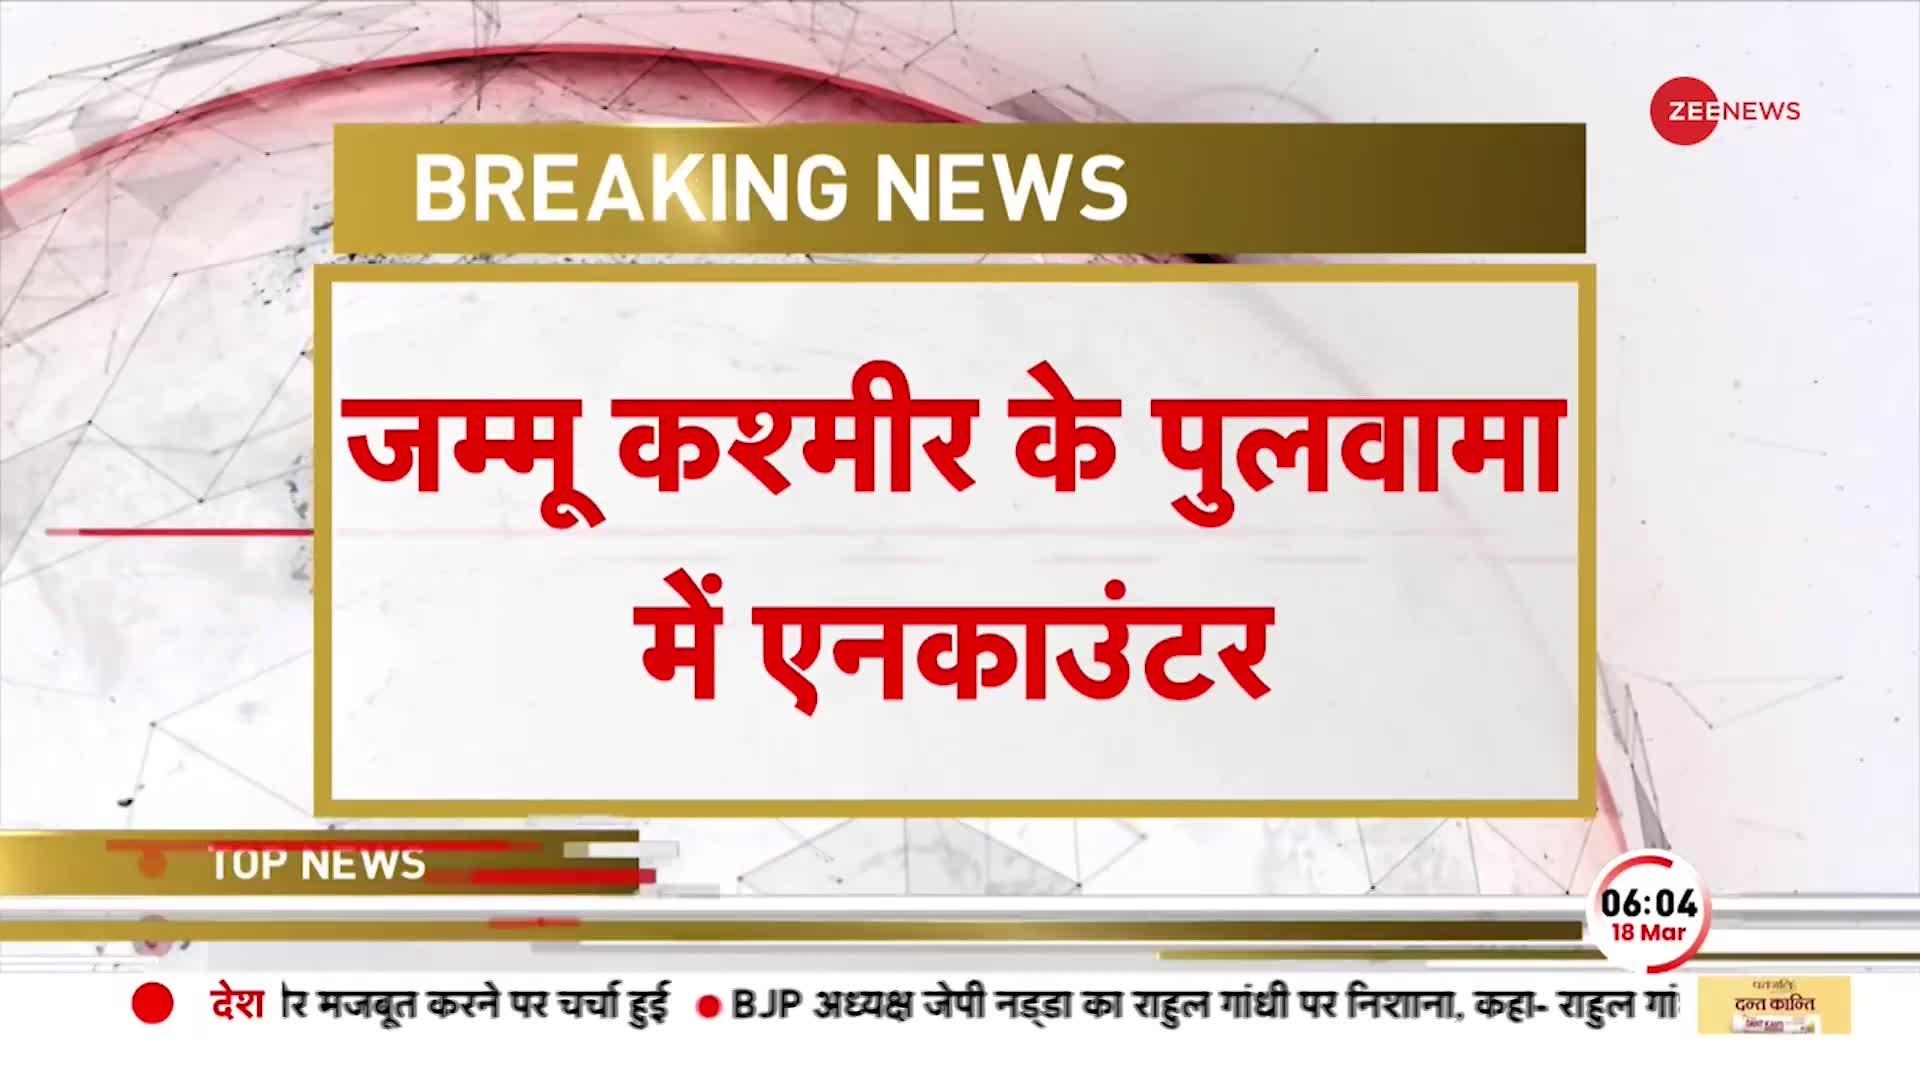 Breaking: जम्मू कश्मीर के पुलवामा में एनकाउंटर जारी, आतंकियों के छिपे होने की खबर